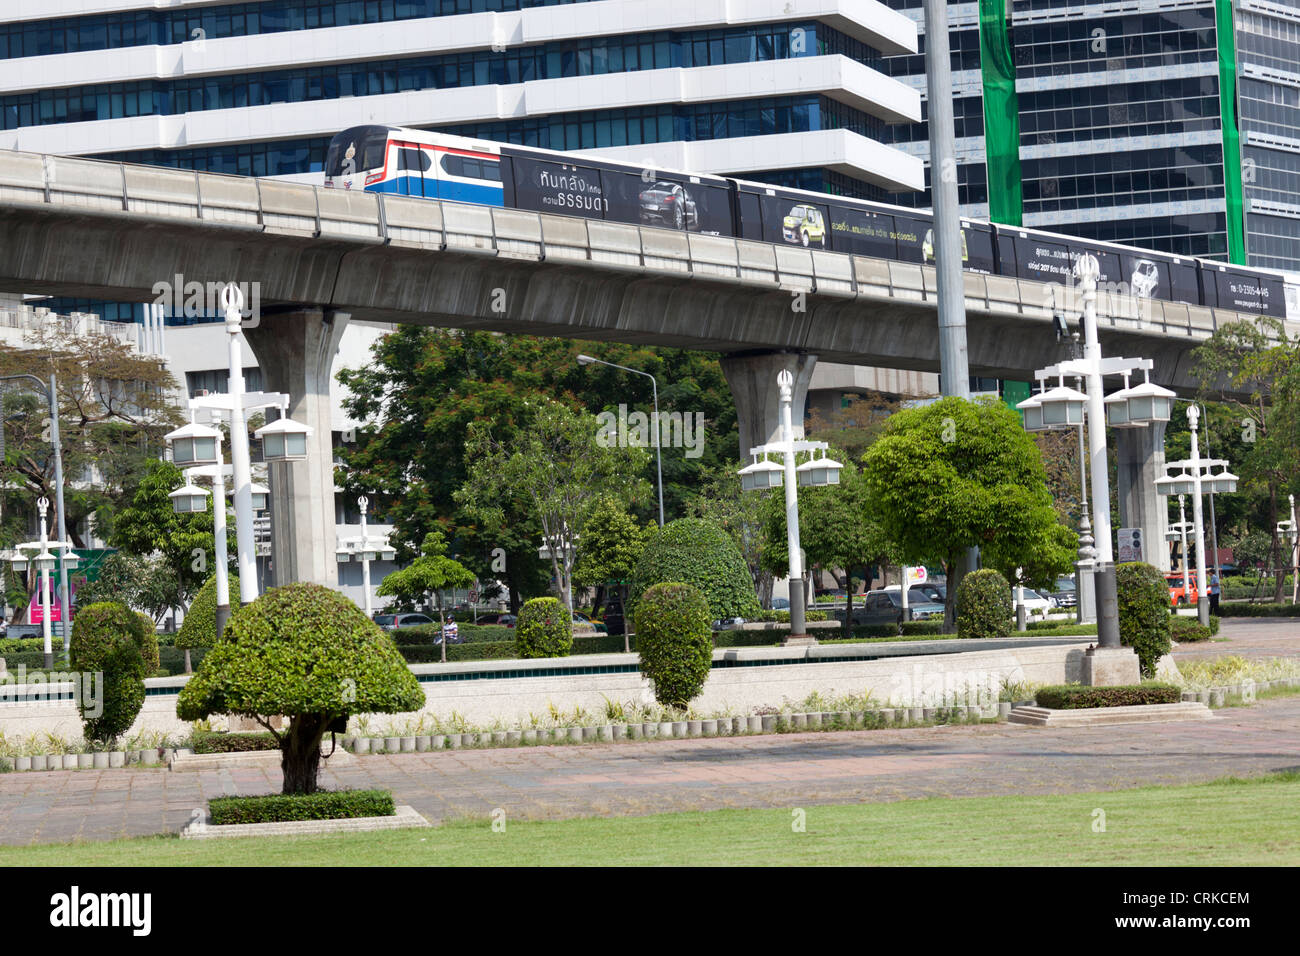 La rampa di Bangkok in base mass transit system o sky train, offre comodi e veloci e passeggiate attraverso il centro di Bangkok (Thailandia). Foto Stock